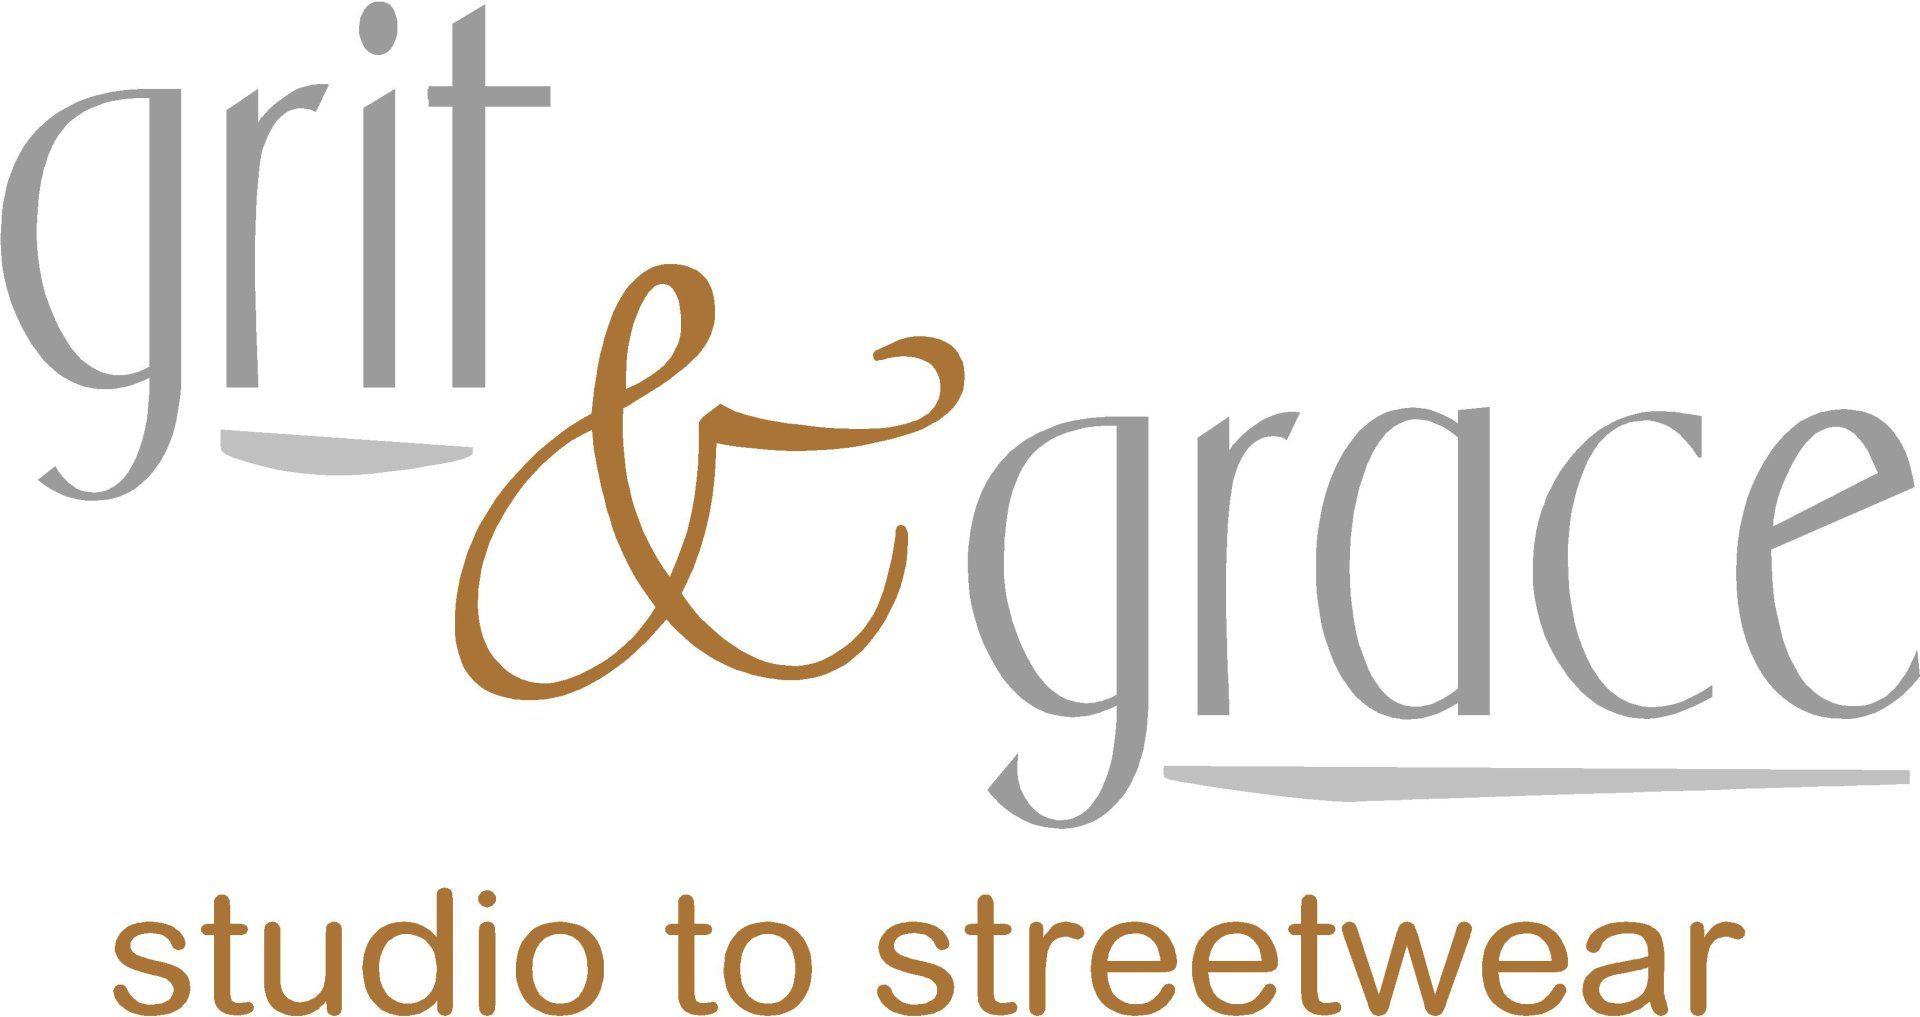 Grit & Grace Studio to Streetwear - Logo